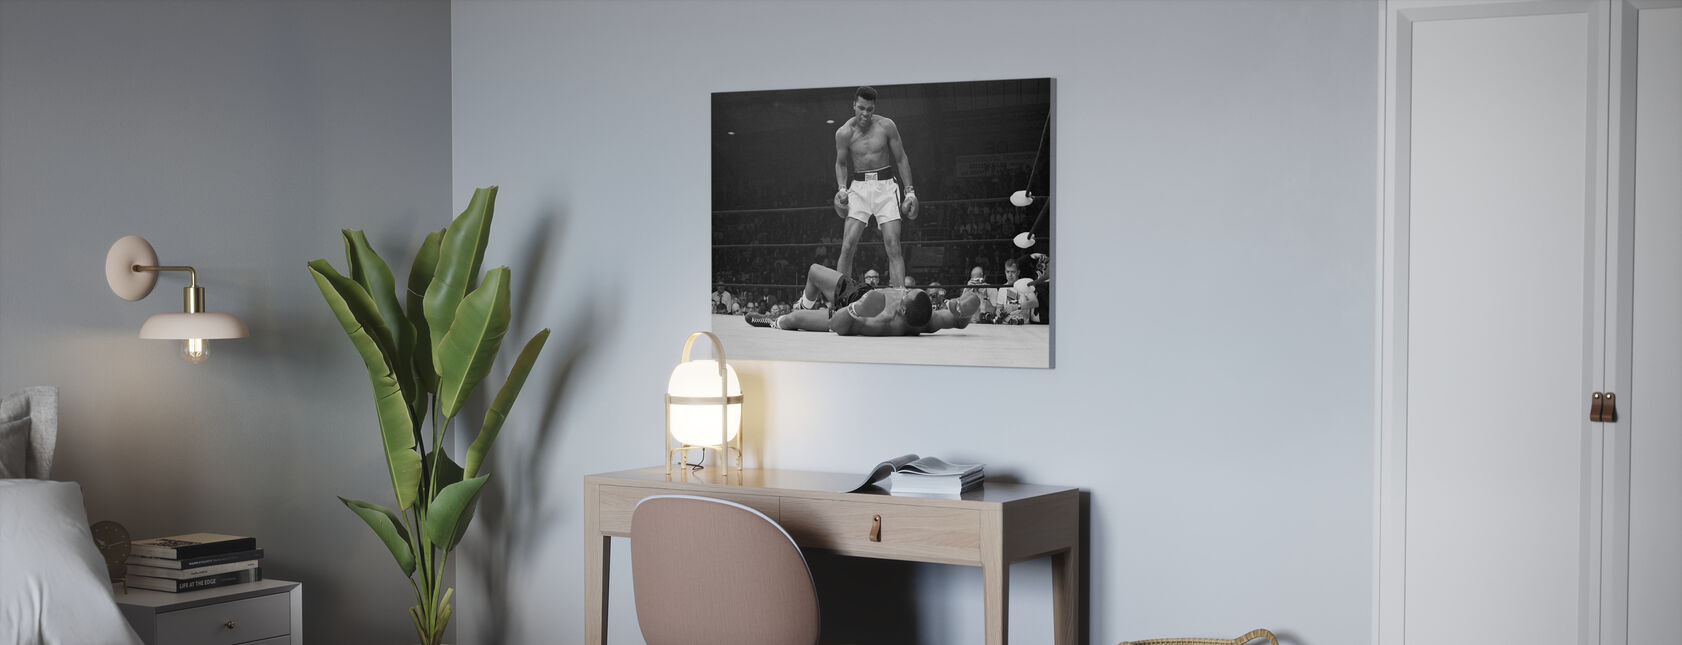 Muhammad Ali vs Sonny Liston - Canvastaulu - Toimisto